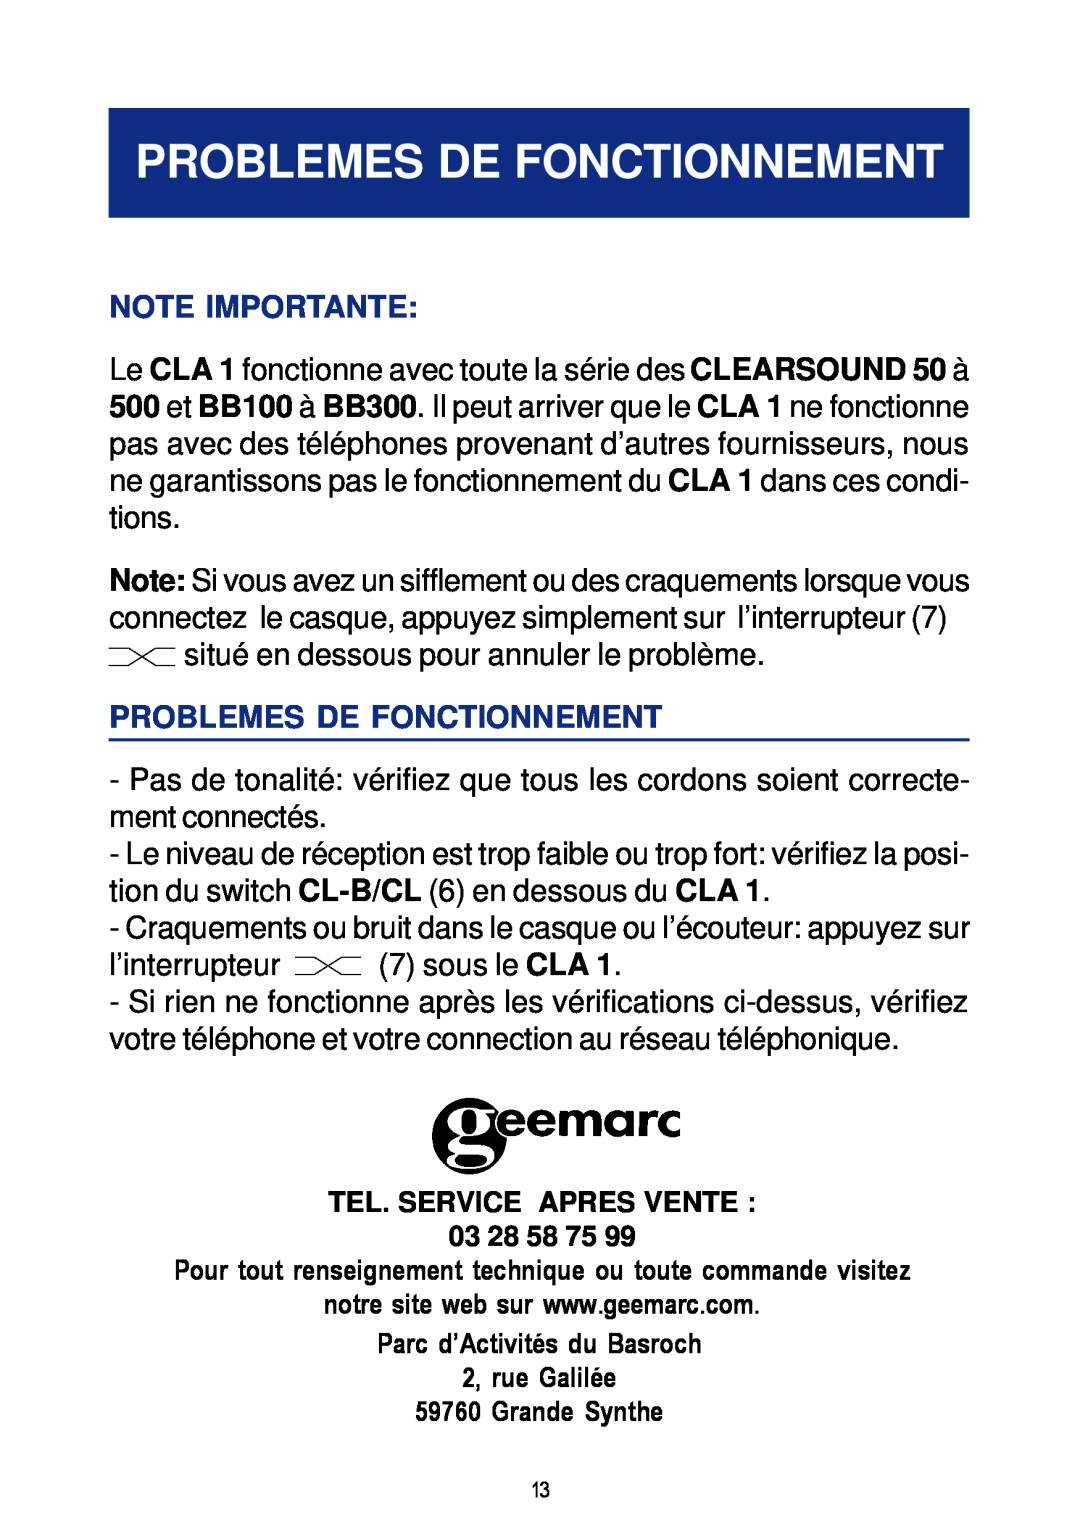 Geemarc CLA 1 manual Problemes De Fonctionnement, Note Importante 